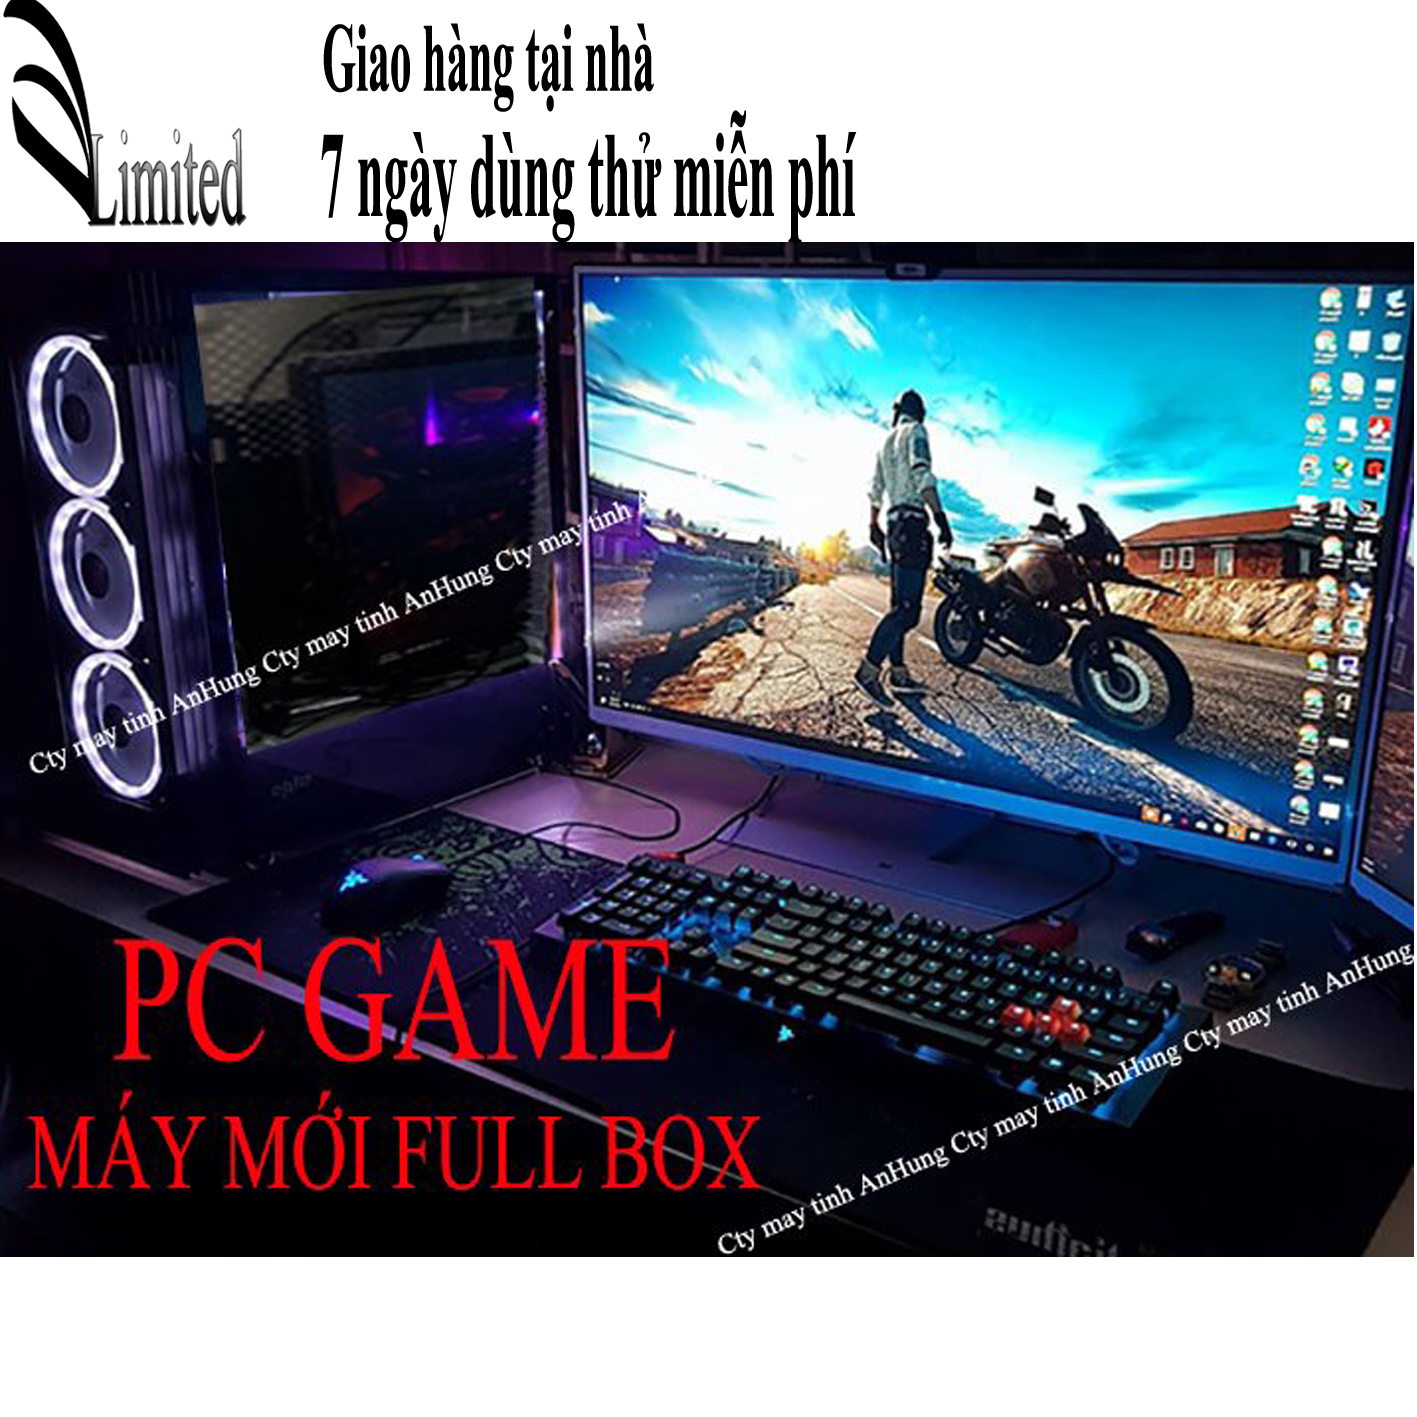 [Trả góp 0%]Bộ máy tính chơi Game màn 24 inch Led màn 19 inch MỚI full box giá rẻ chip intel core i5/i3 sản phẩm trọn bộ chơi game  lol cf fifa pubg mobi...